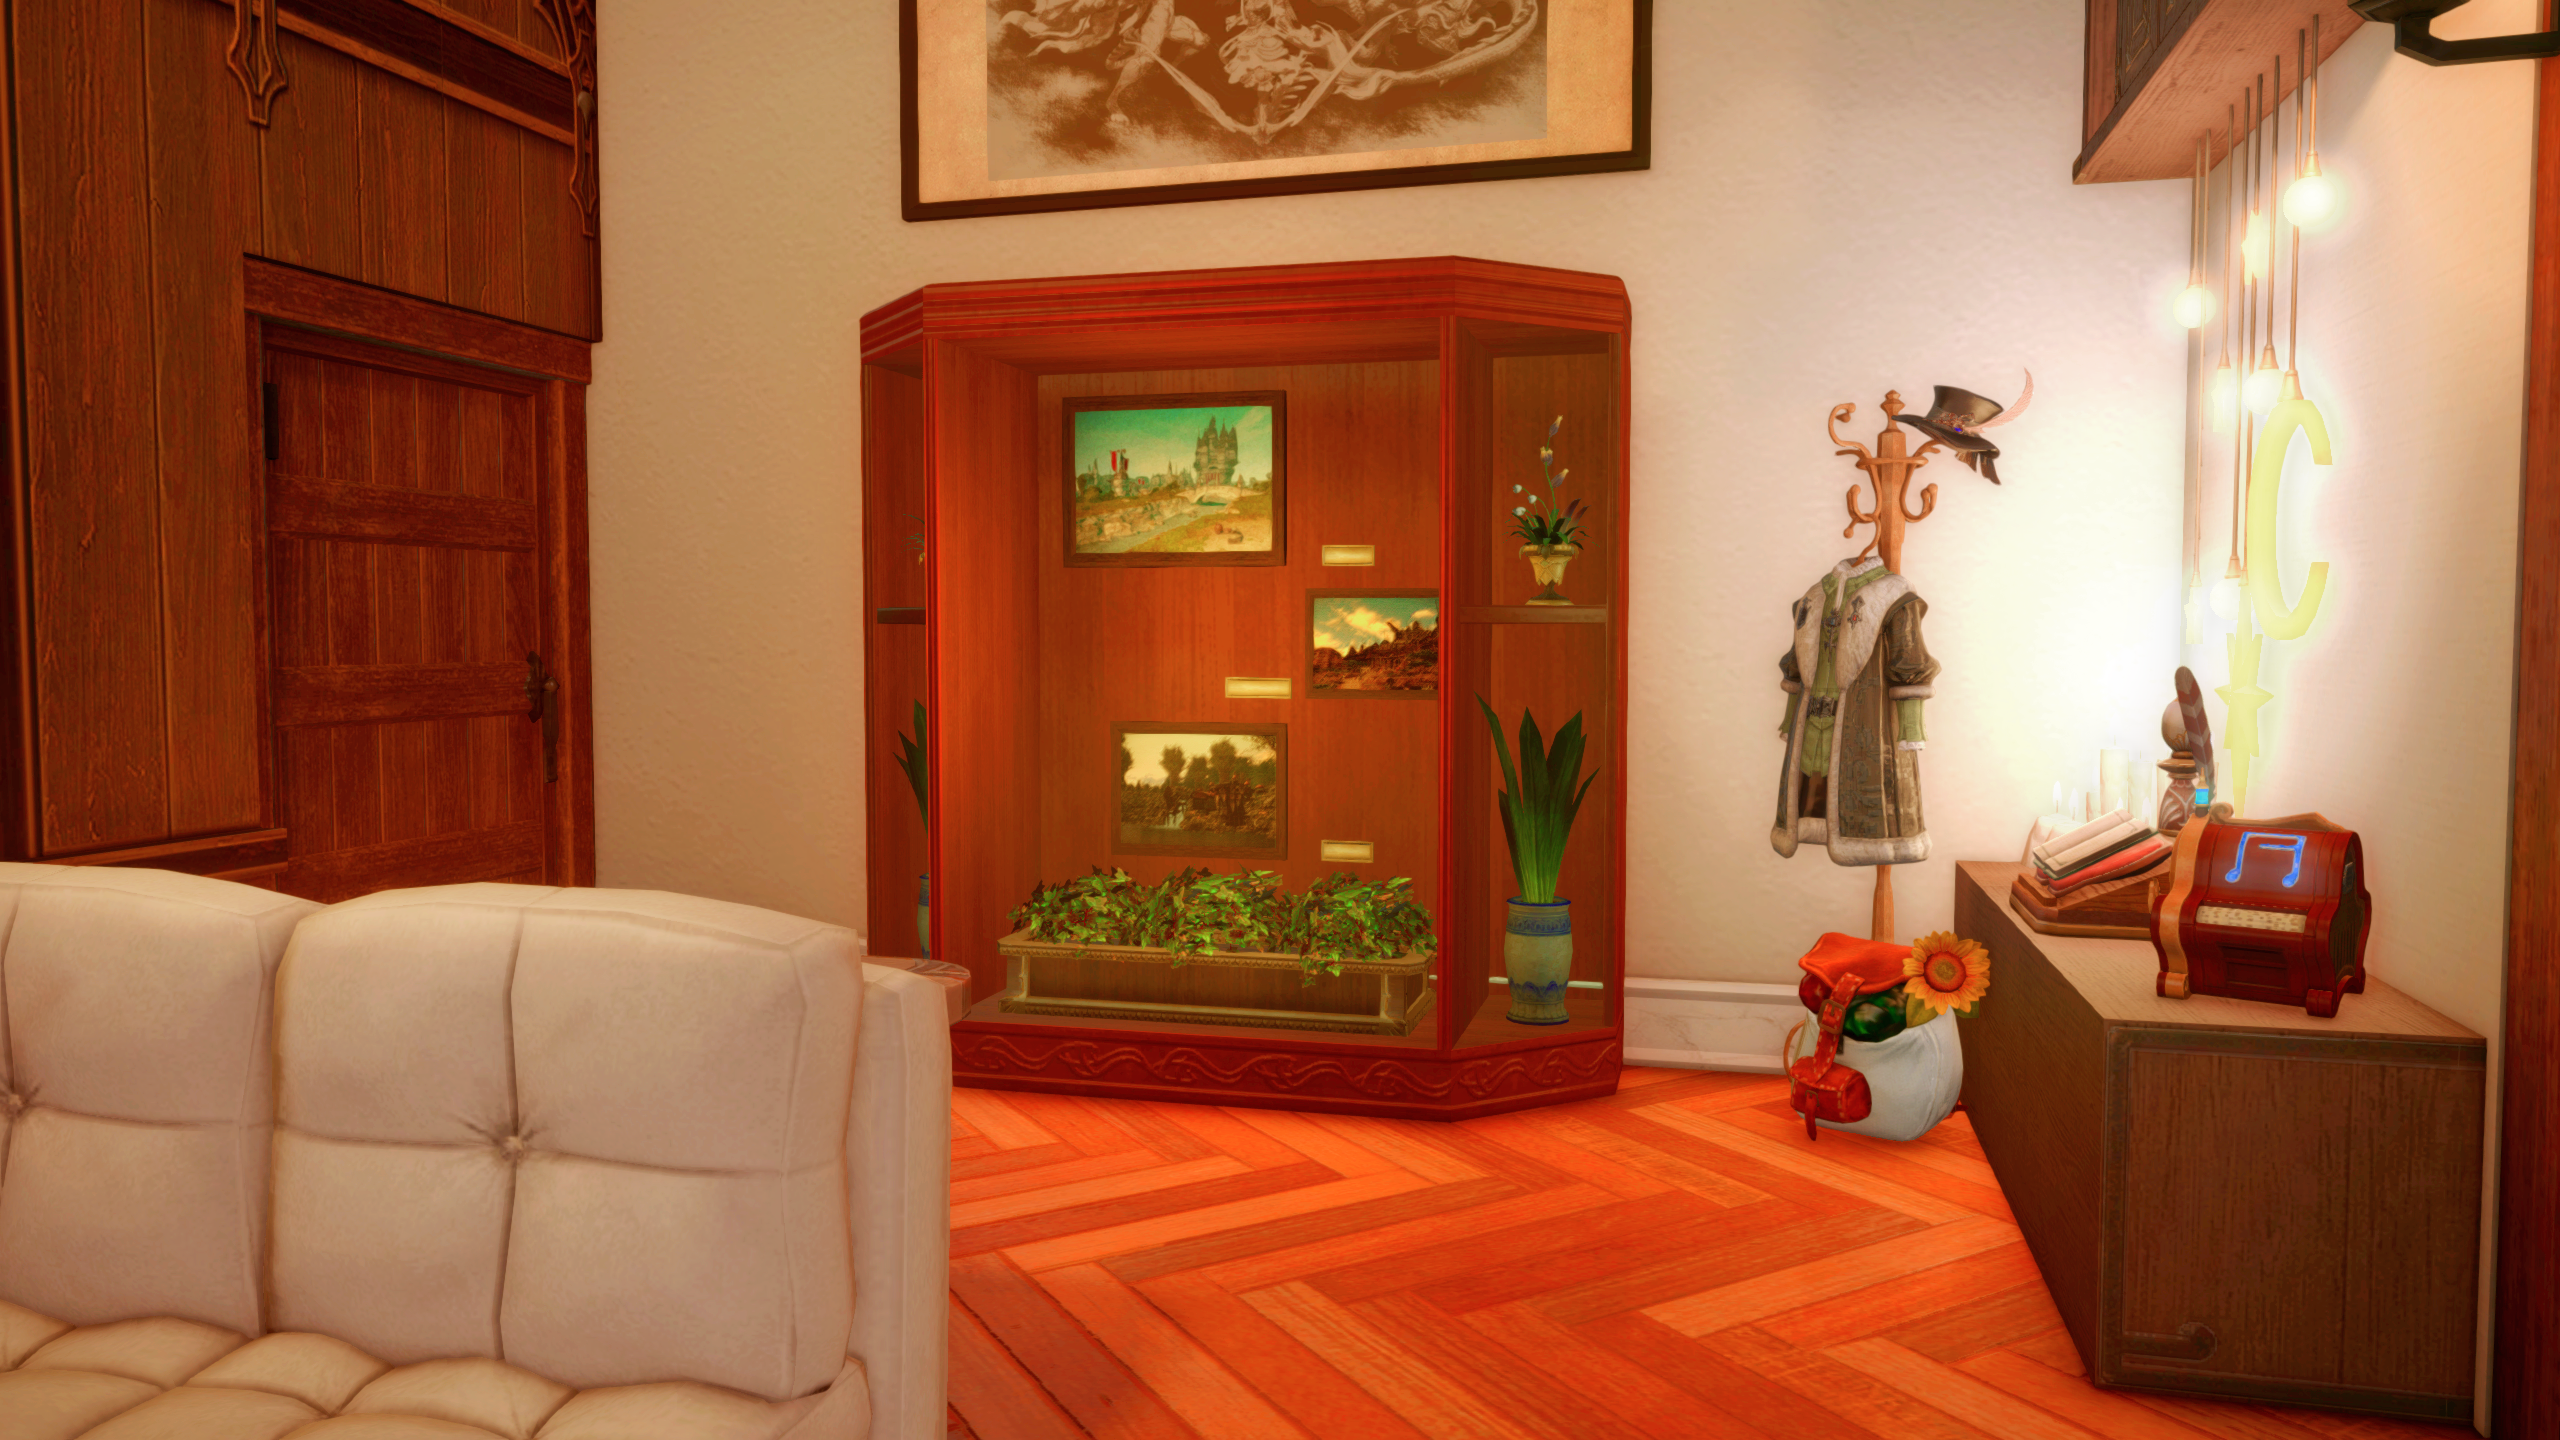 Logement Final Fantasy 14, une vitrine en verre avec des plantes et de l'art